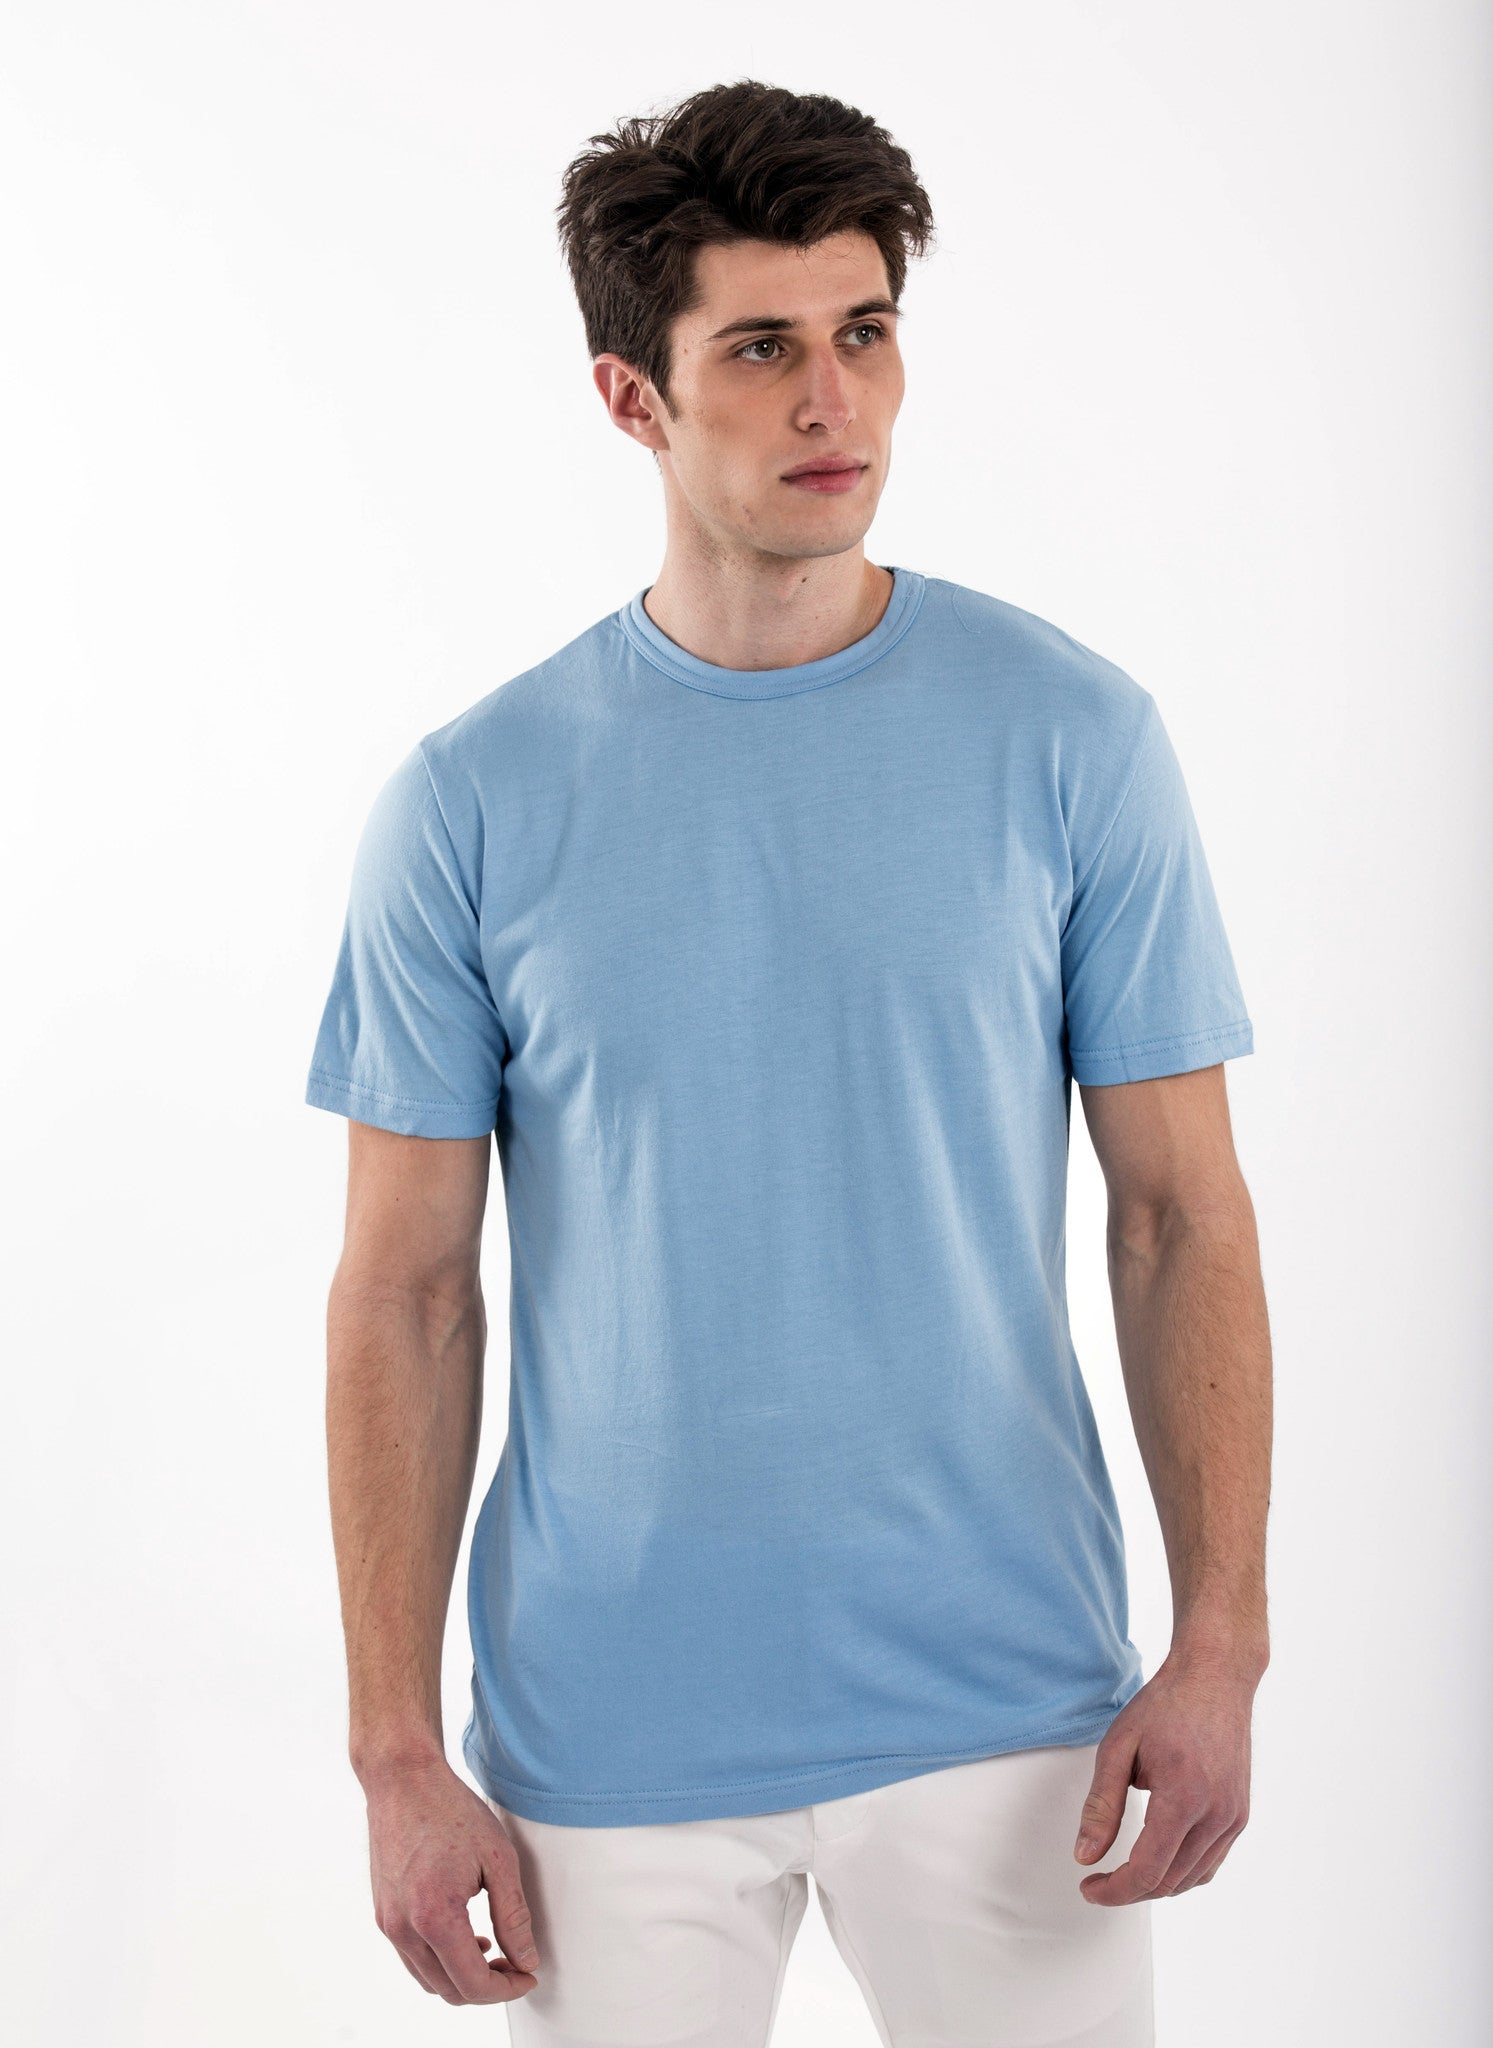 Mens – The Bamboo Shirt | Natural and Organic T-shirts